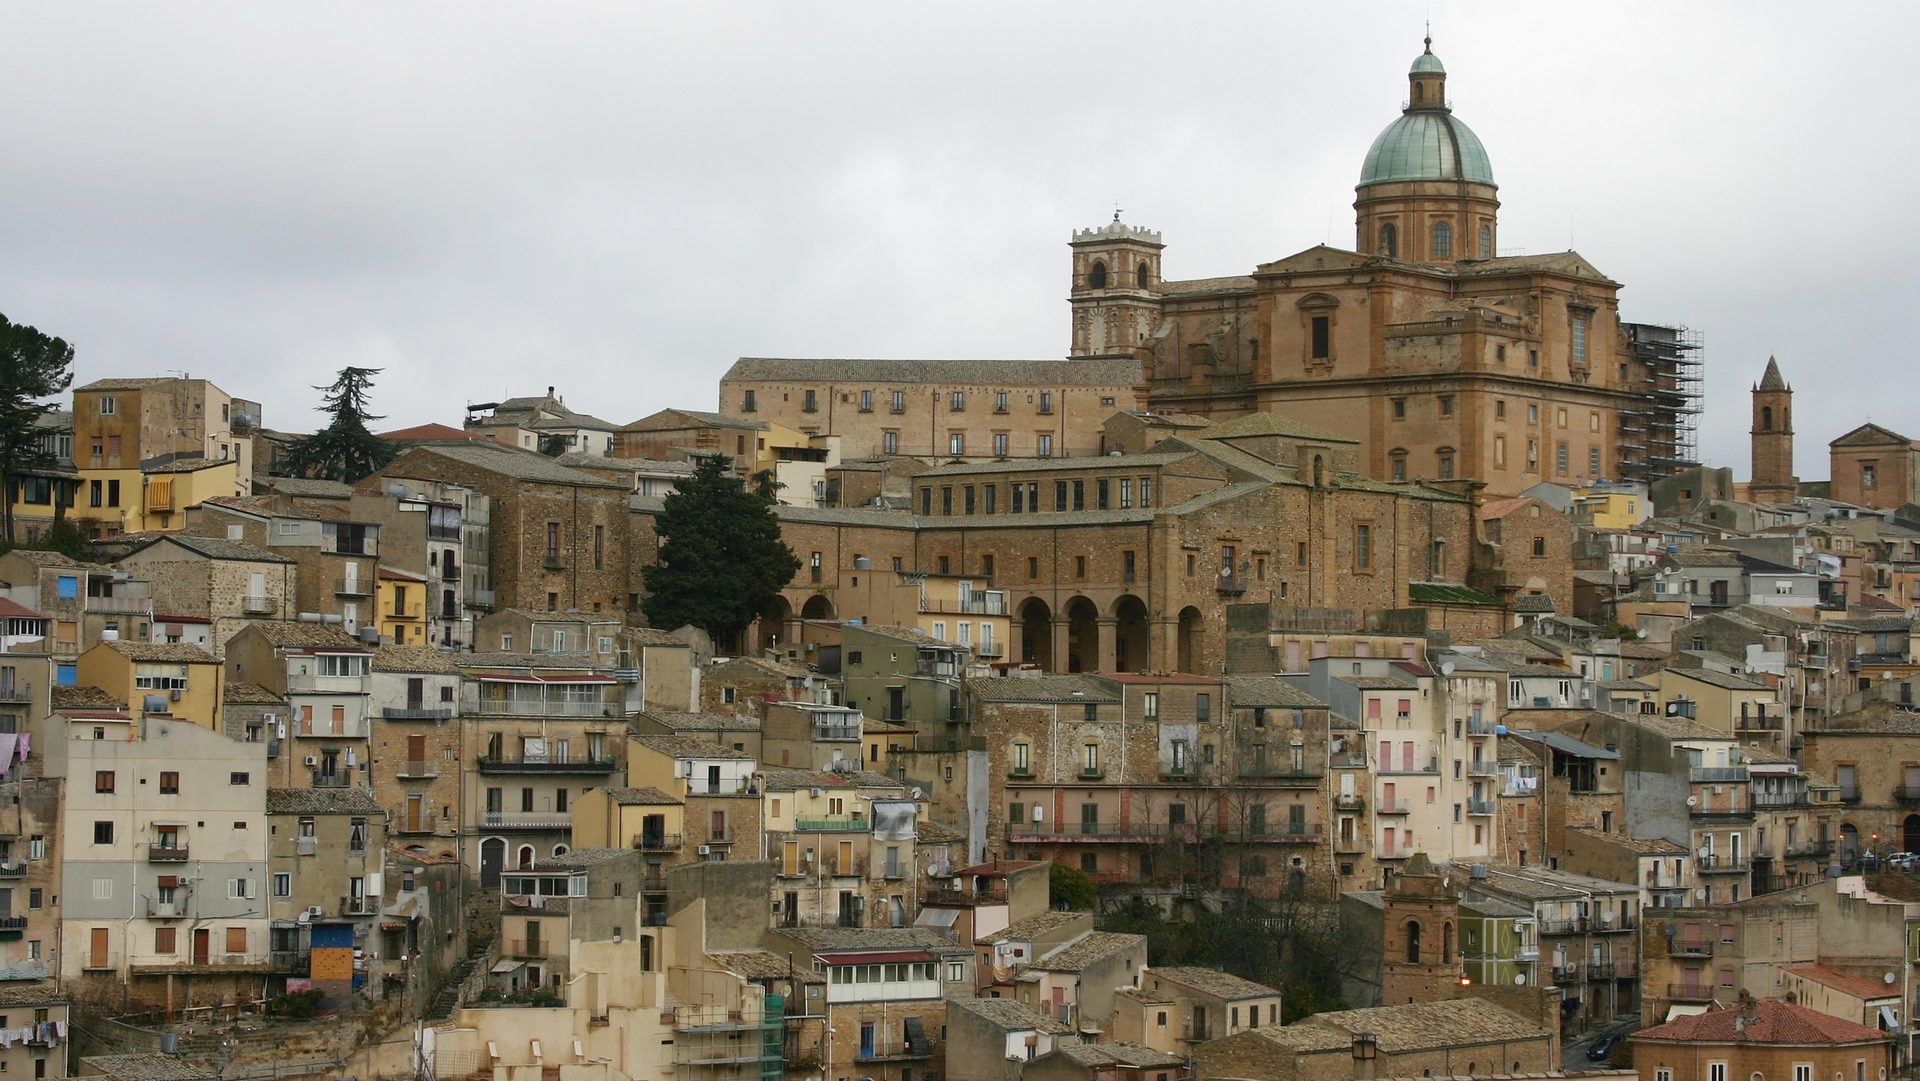 Le cité médiévale de Piazza Armerina, première étape de la visite du pape François en Sicile | wikimedia commons jriberio1CC BY-SA 4.0